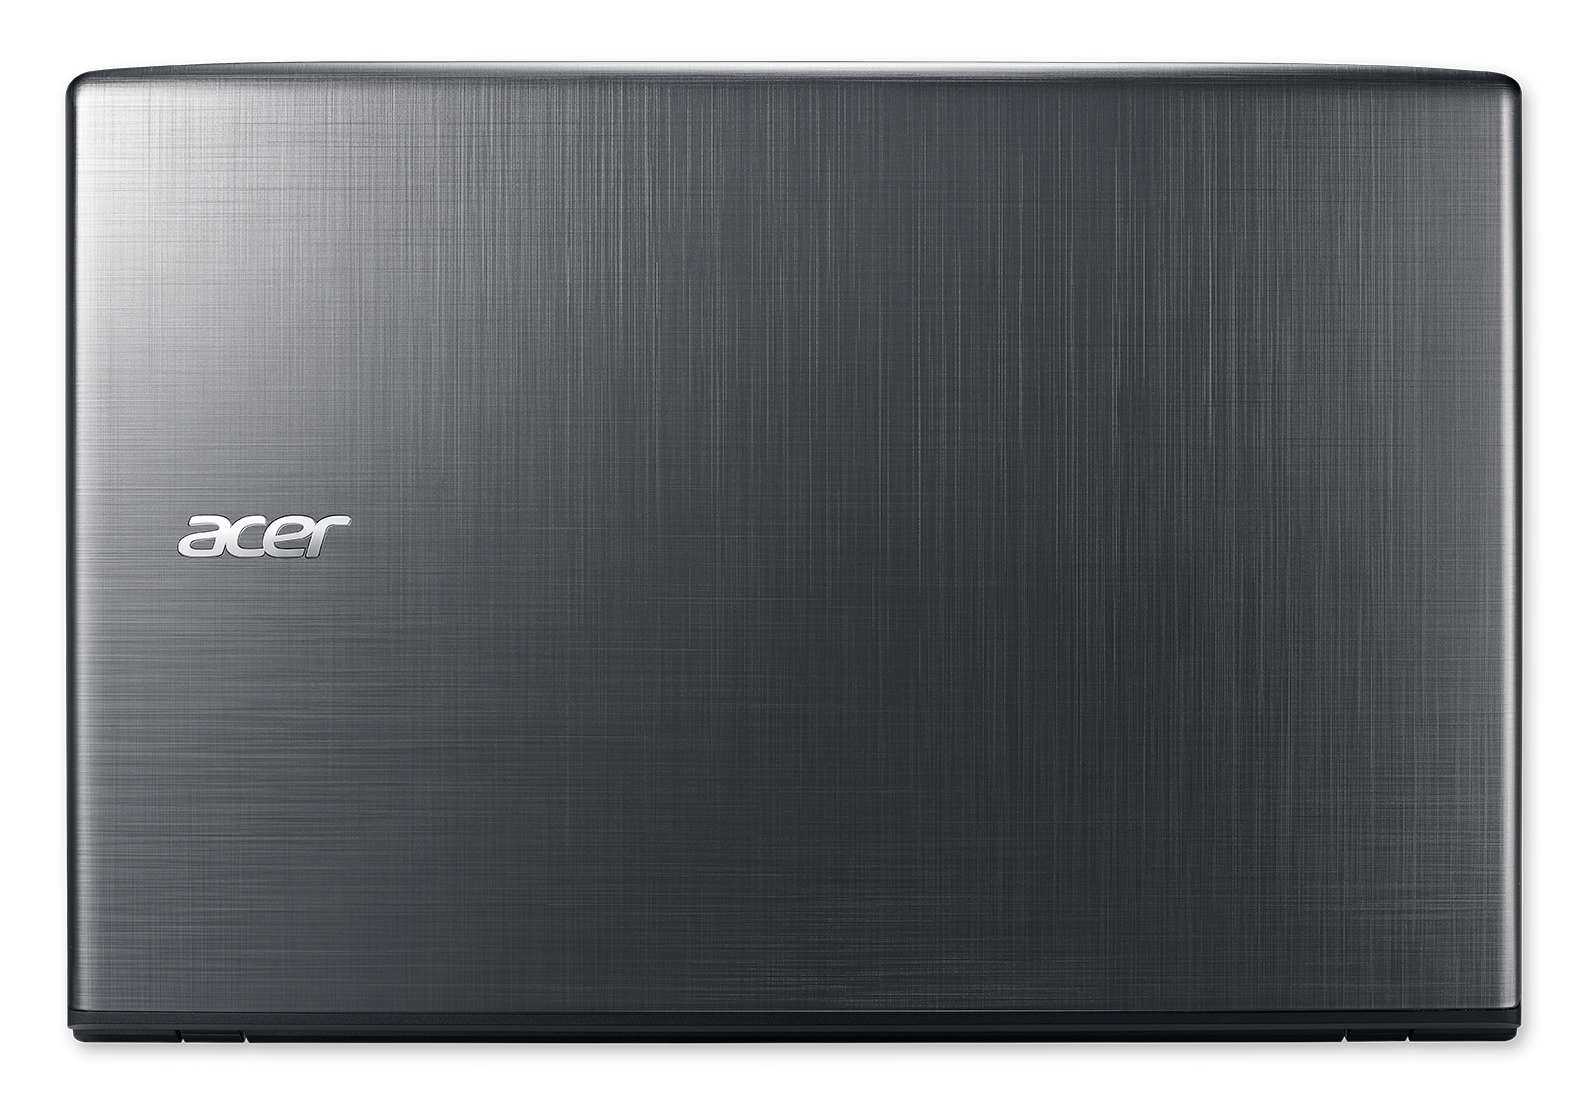 Acer Aspire E5-575-72N3, 15.6" Full HD, 7th Gen Intel Core i7-7500U, 8GB DDR4, 1TB HDD, Windows 10 Home - image 5 of 6